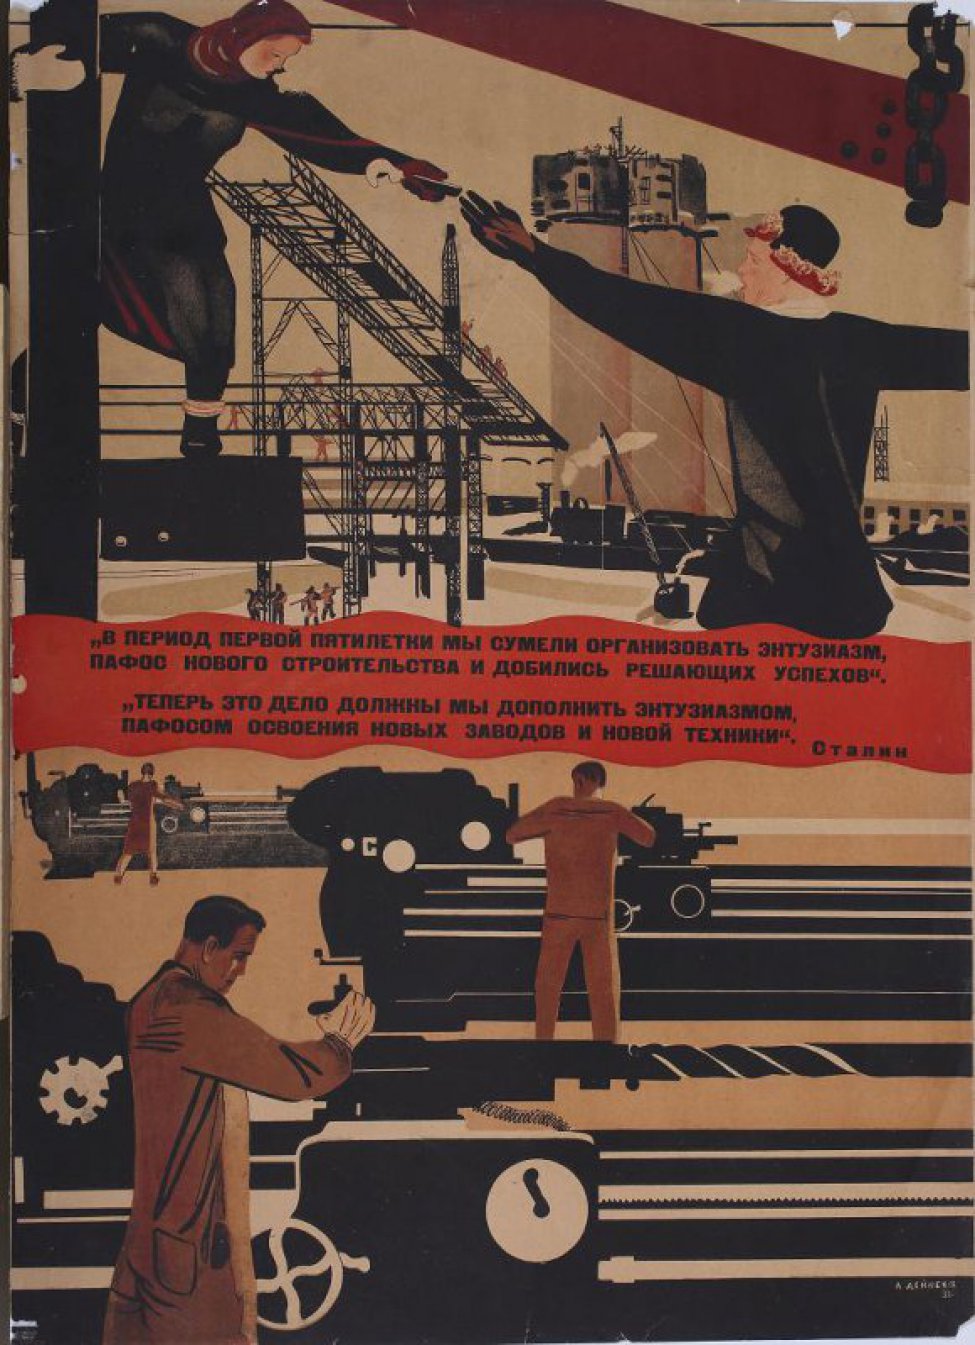 Изображены на двух рисунках цеха, где работают рабочие и работницы. По середине между рисунками помещены слова т.Сталина: "В период... техники."